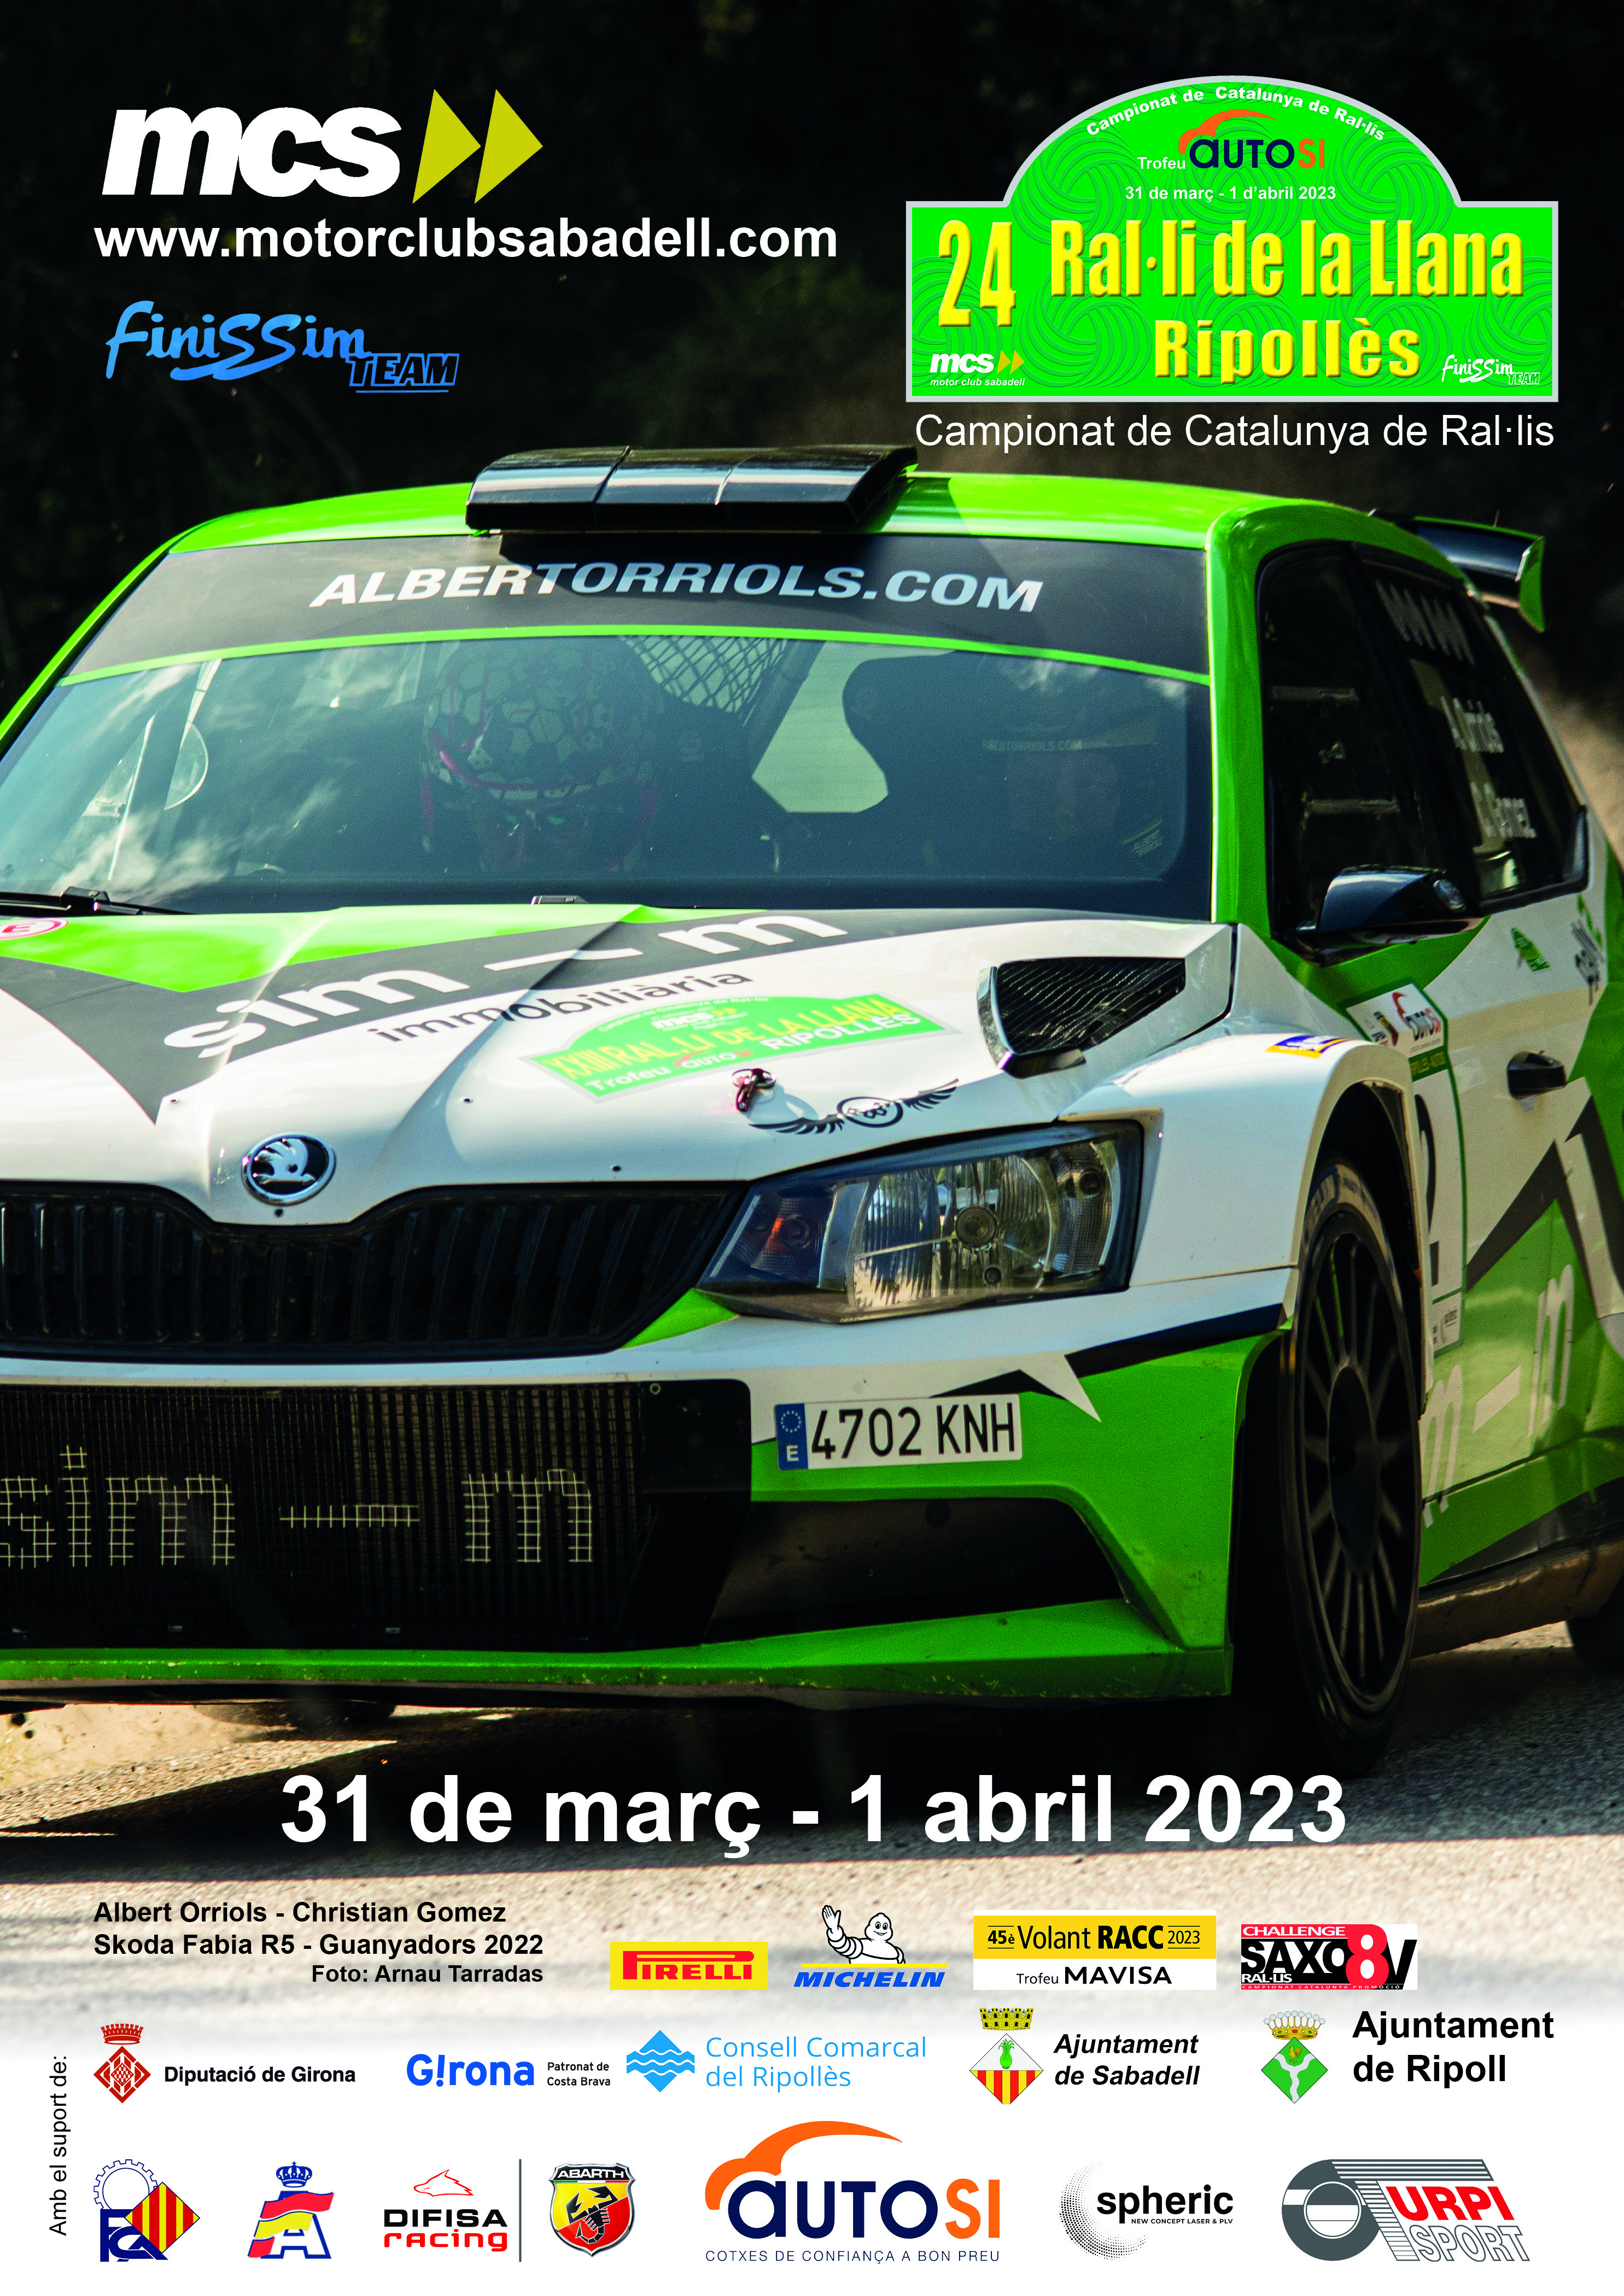 Campeonatos Regionales 2023: Información y novedades - Página 3 Poster_Llana_2023_V2